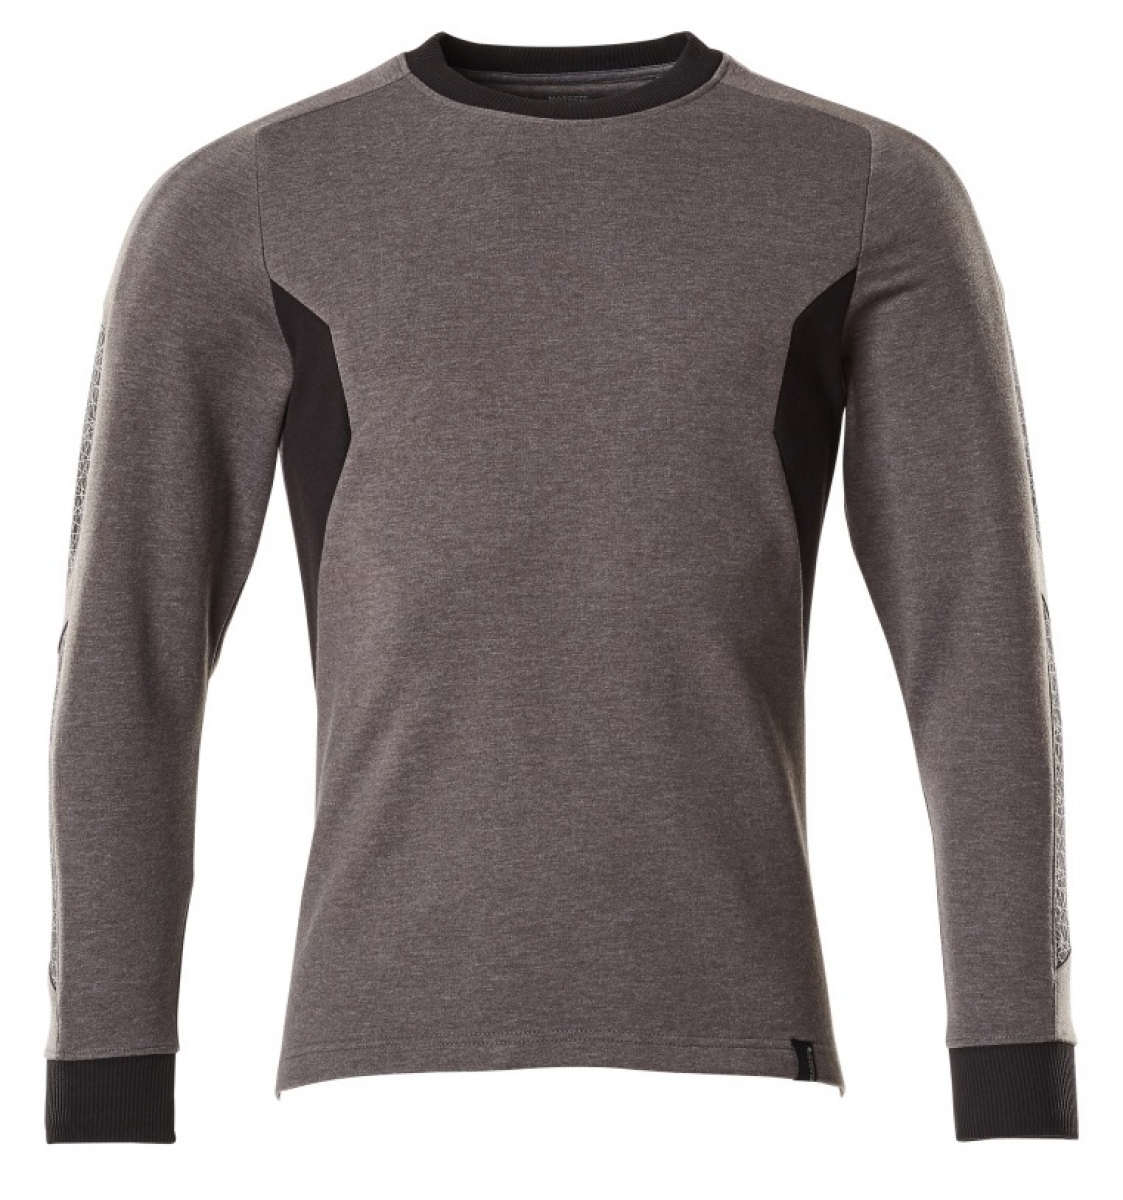 MASCOT-Worker-Shirts, Sweatshirt, 310 g/m, dunkelanthrazit/schwarz